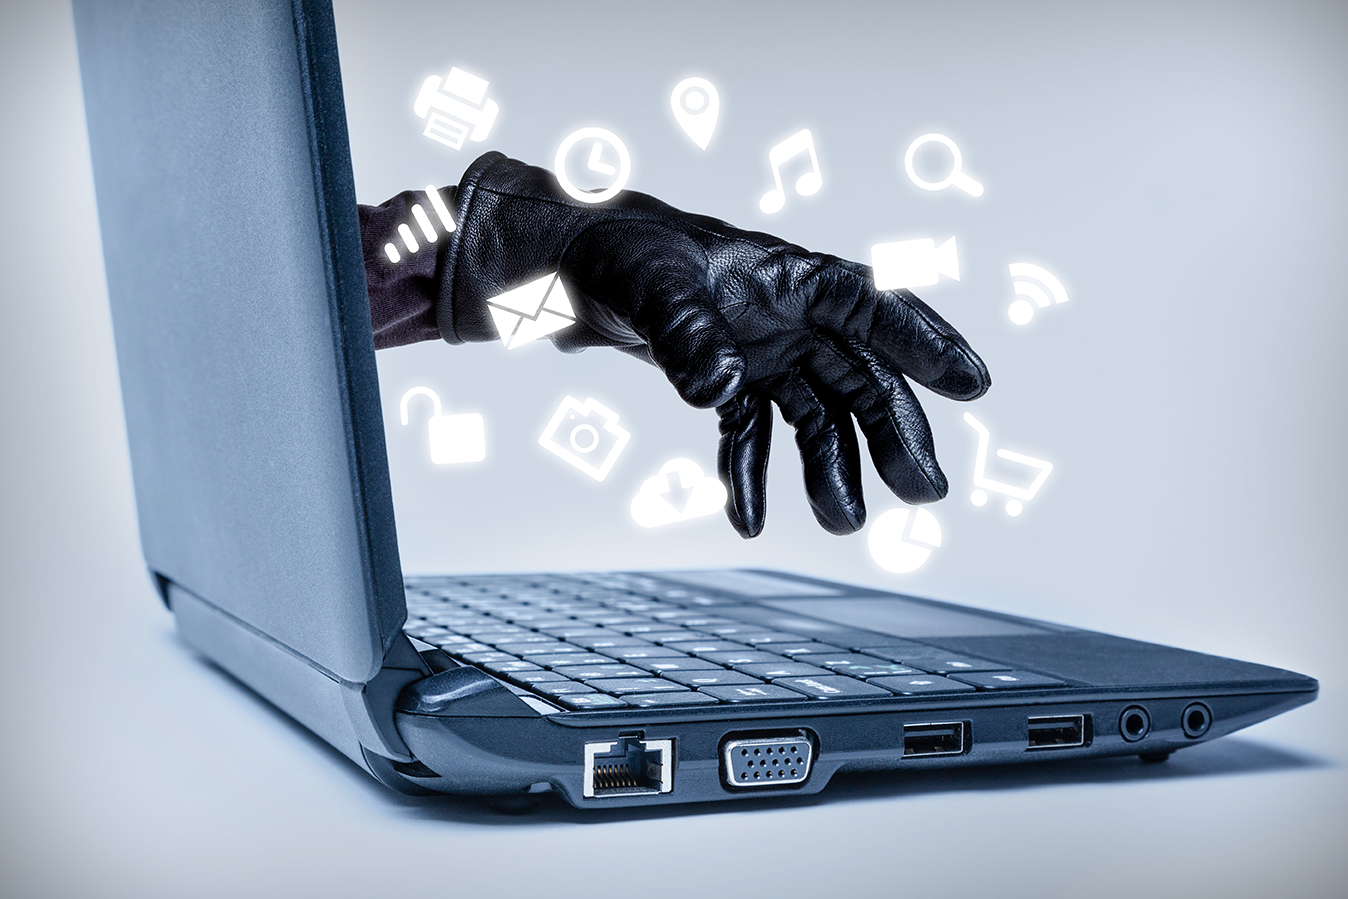 Mano saliendo del monitor de una laptop, reconocer ataques de phishing